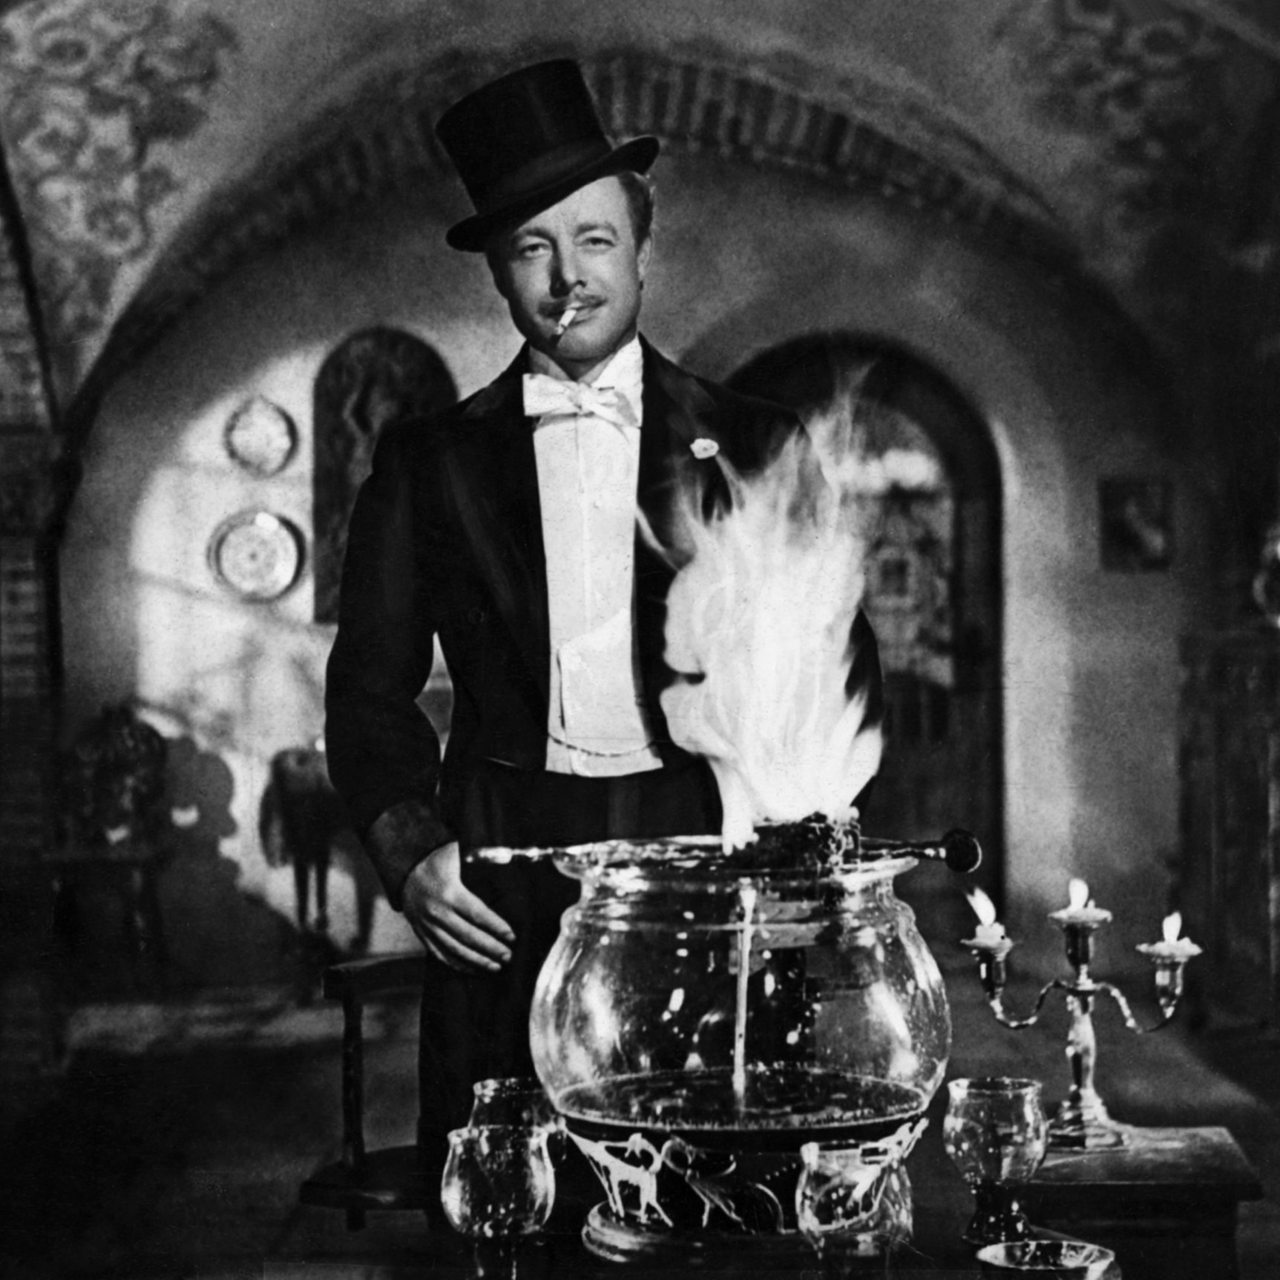 Heinz Rühmann mit Zigarette und Zylinder vor der "Feuerzangenbowle" aus dem gleichnamigen Film.